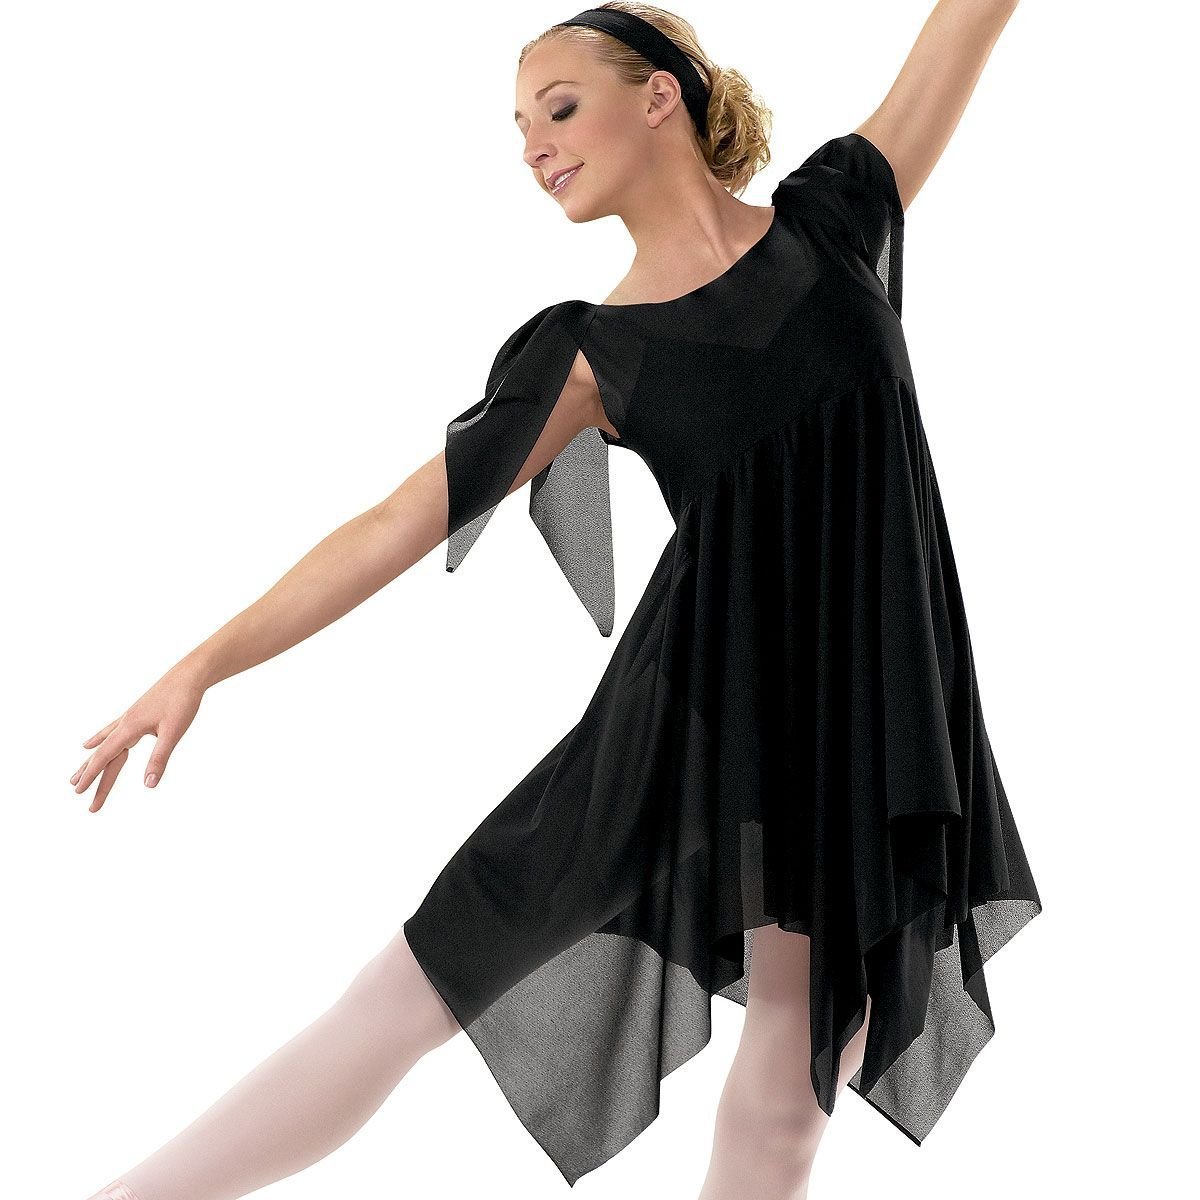 Контемп Contemporary Dance платья